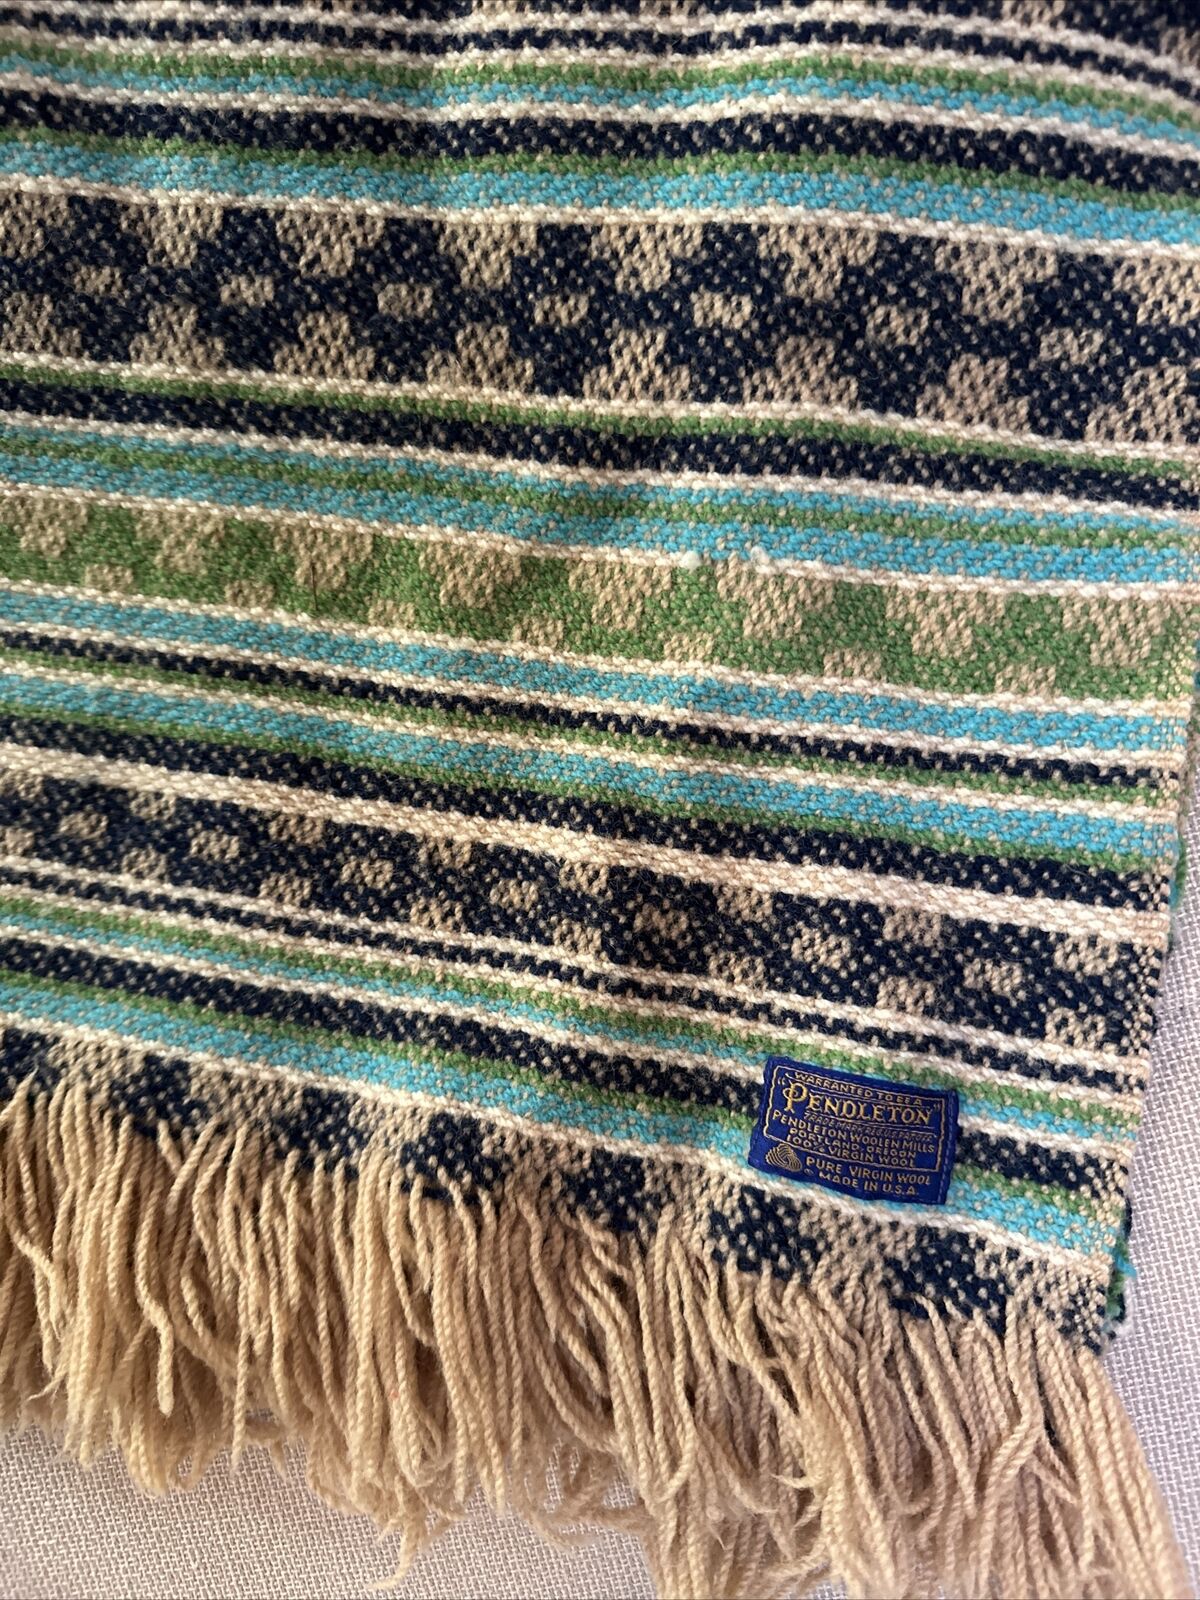 Vtg 60s-70s Pendleton 100% Virgin Wool Woven Fringe Throw Blanket 52x54” Blue